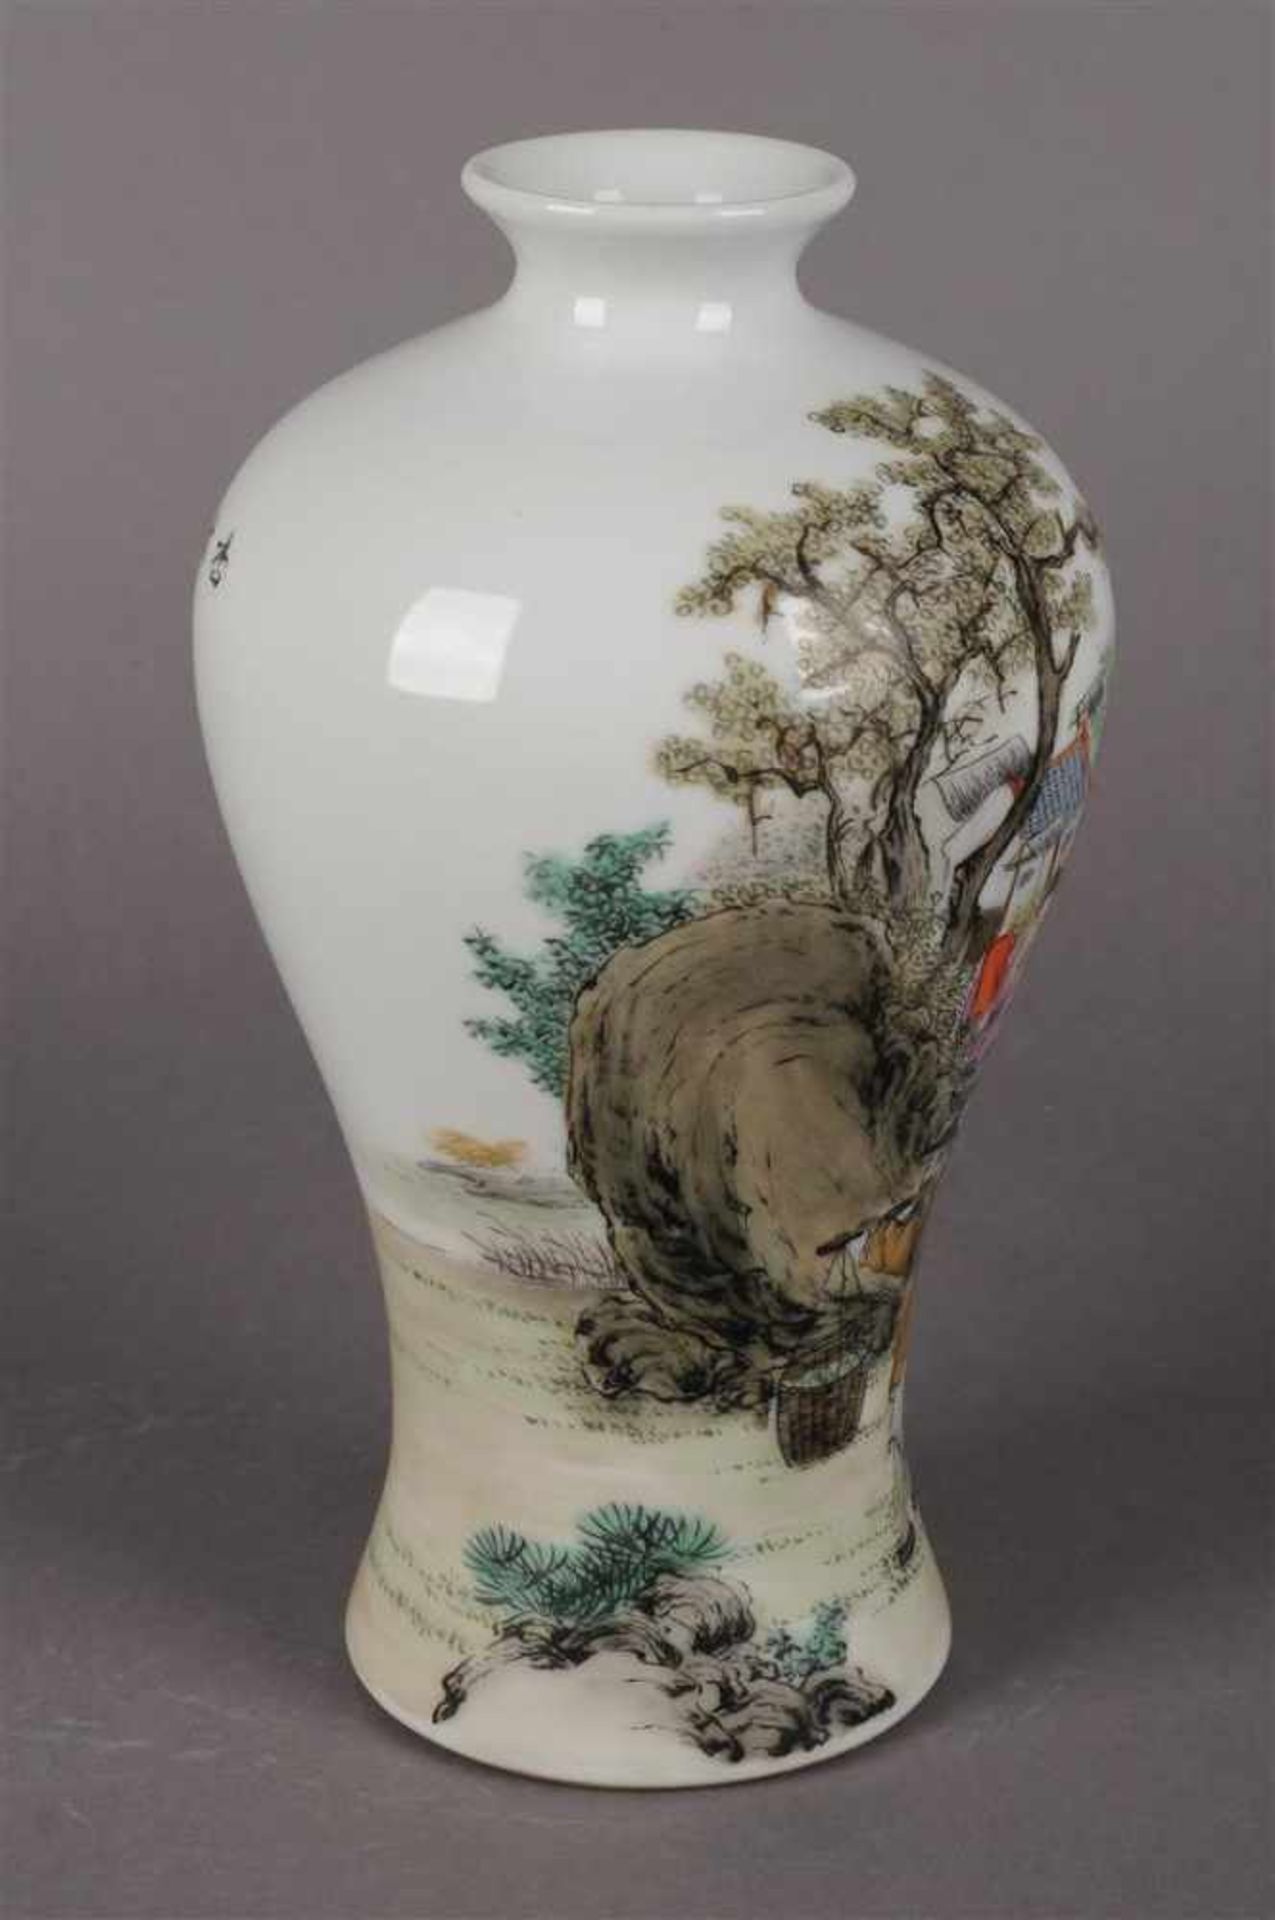 Polychroom porseleinen Meiping vaas met figuraal landschaps decor en tekst, gemerkt met zegelmerk, - Bild 3 aus 6